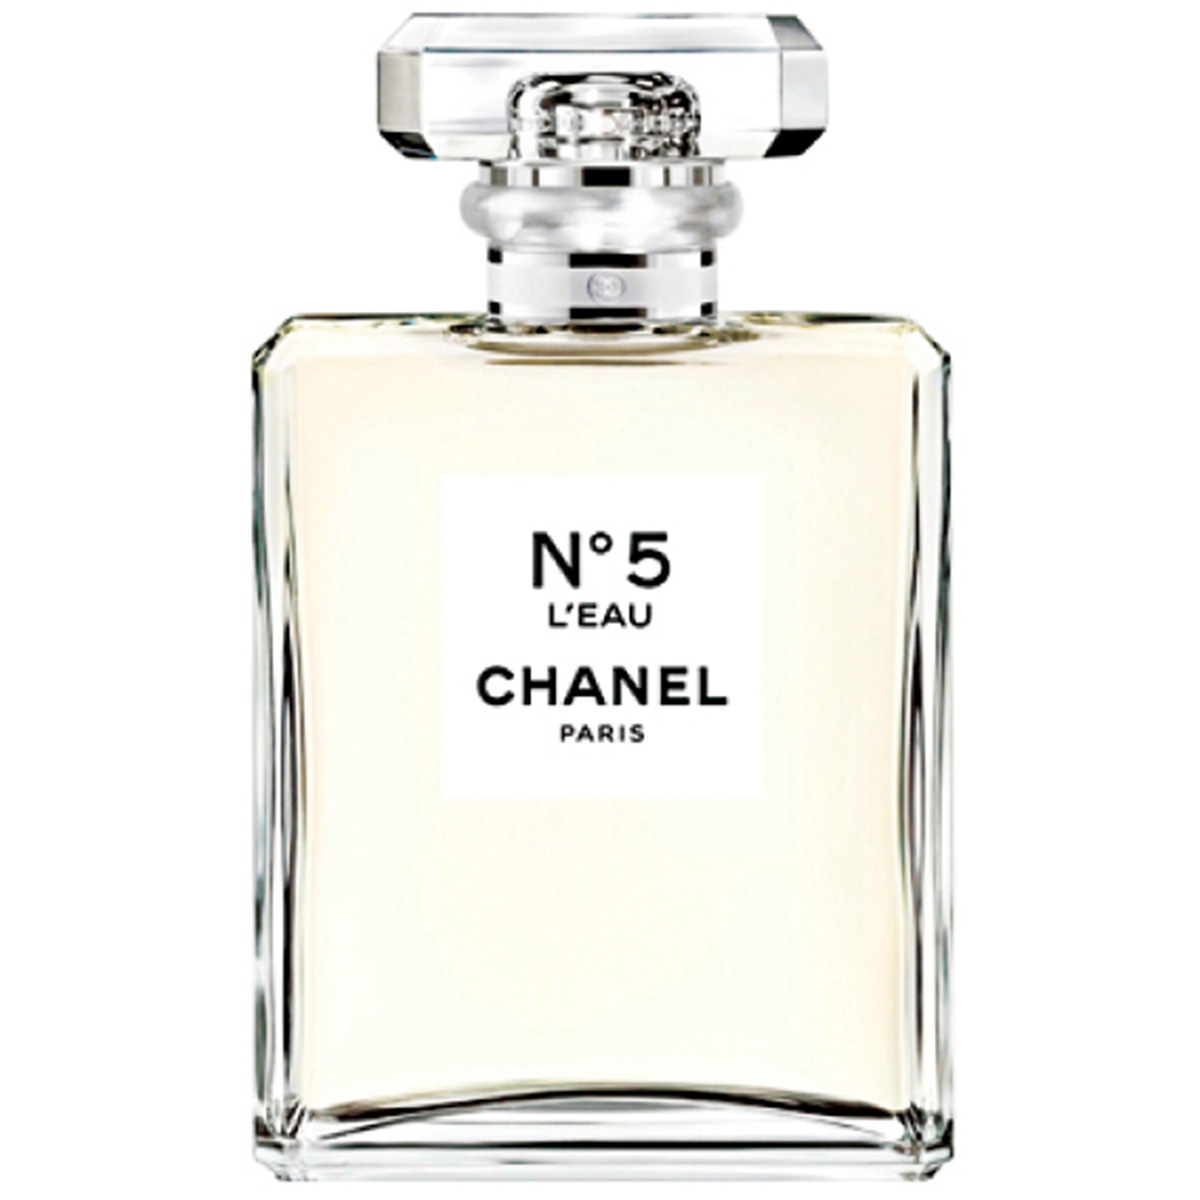 Impulse Buy: The NEW Chanel No. 5